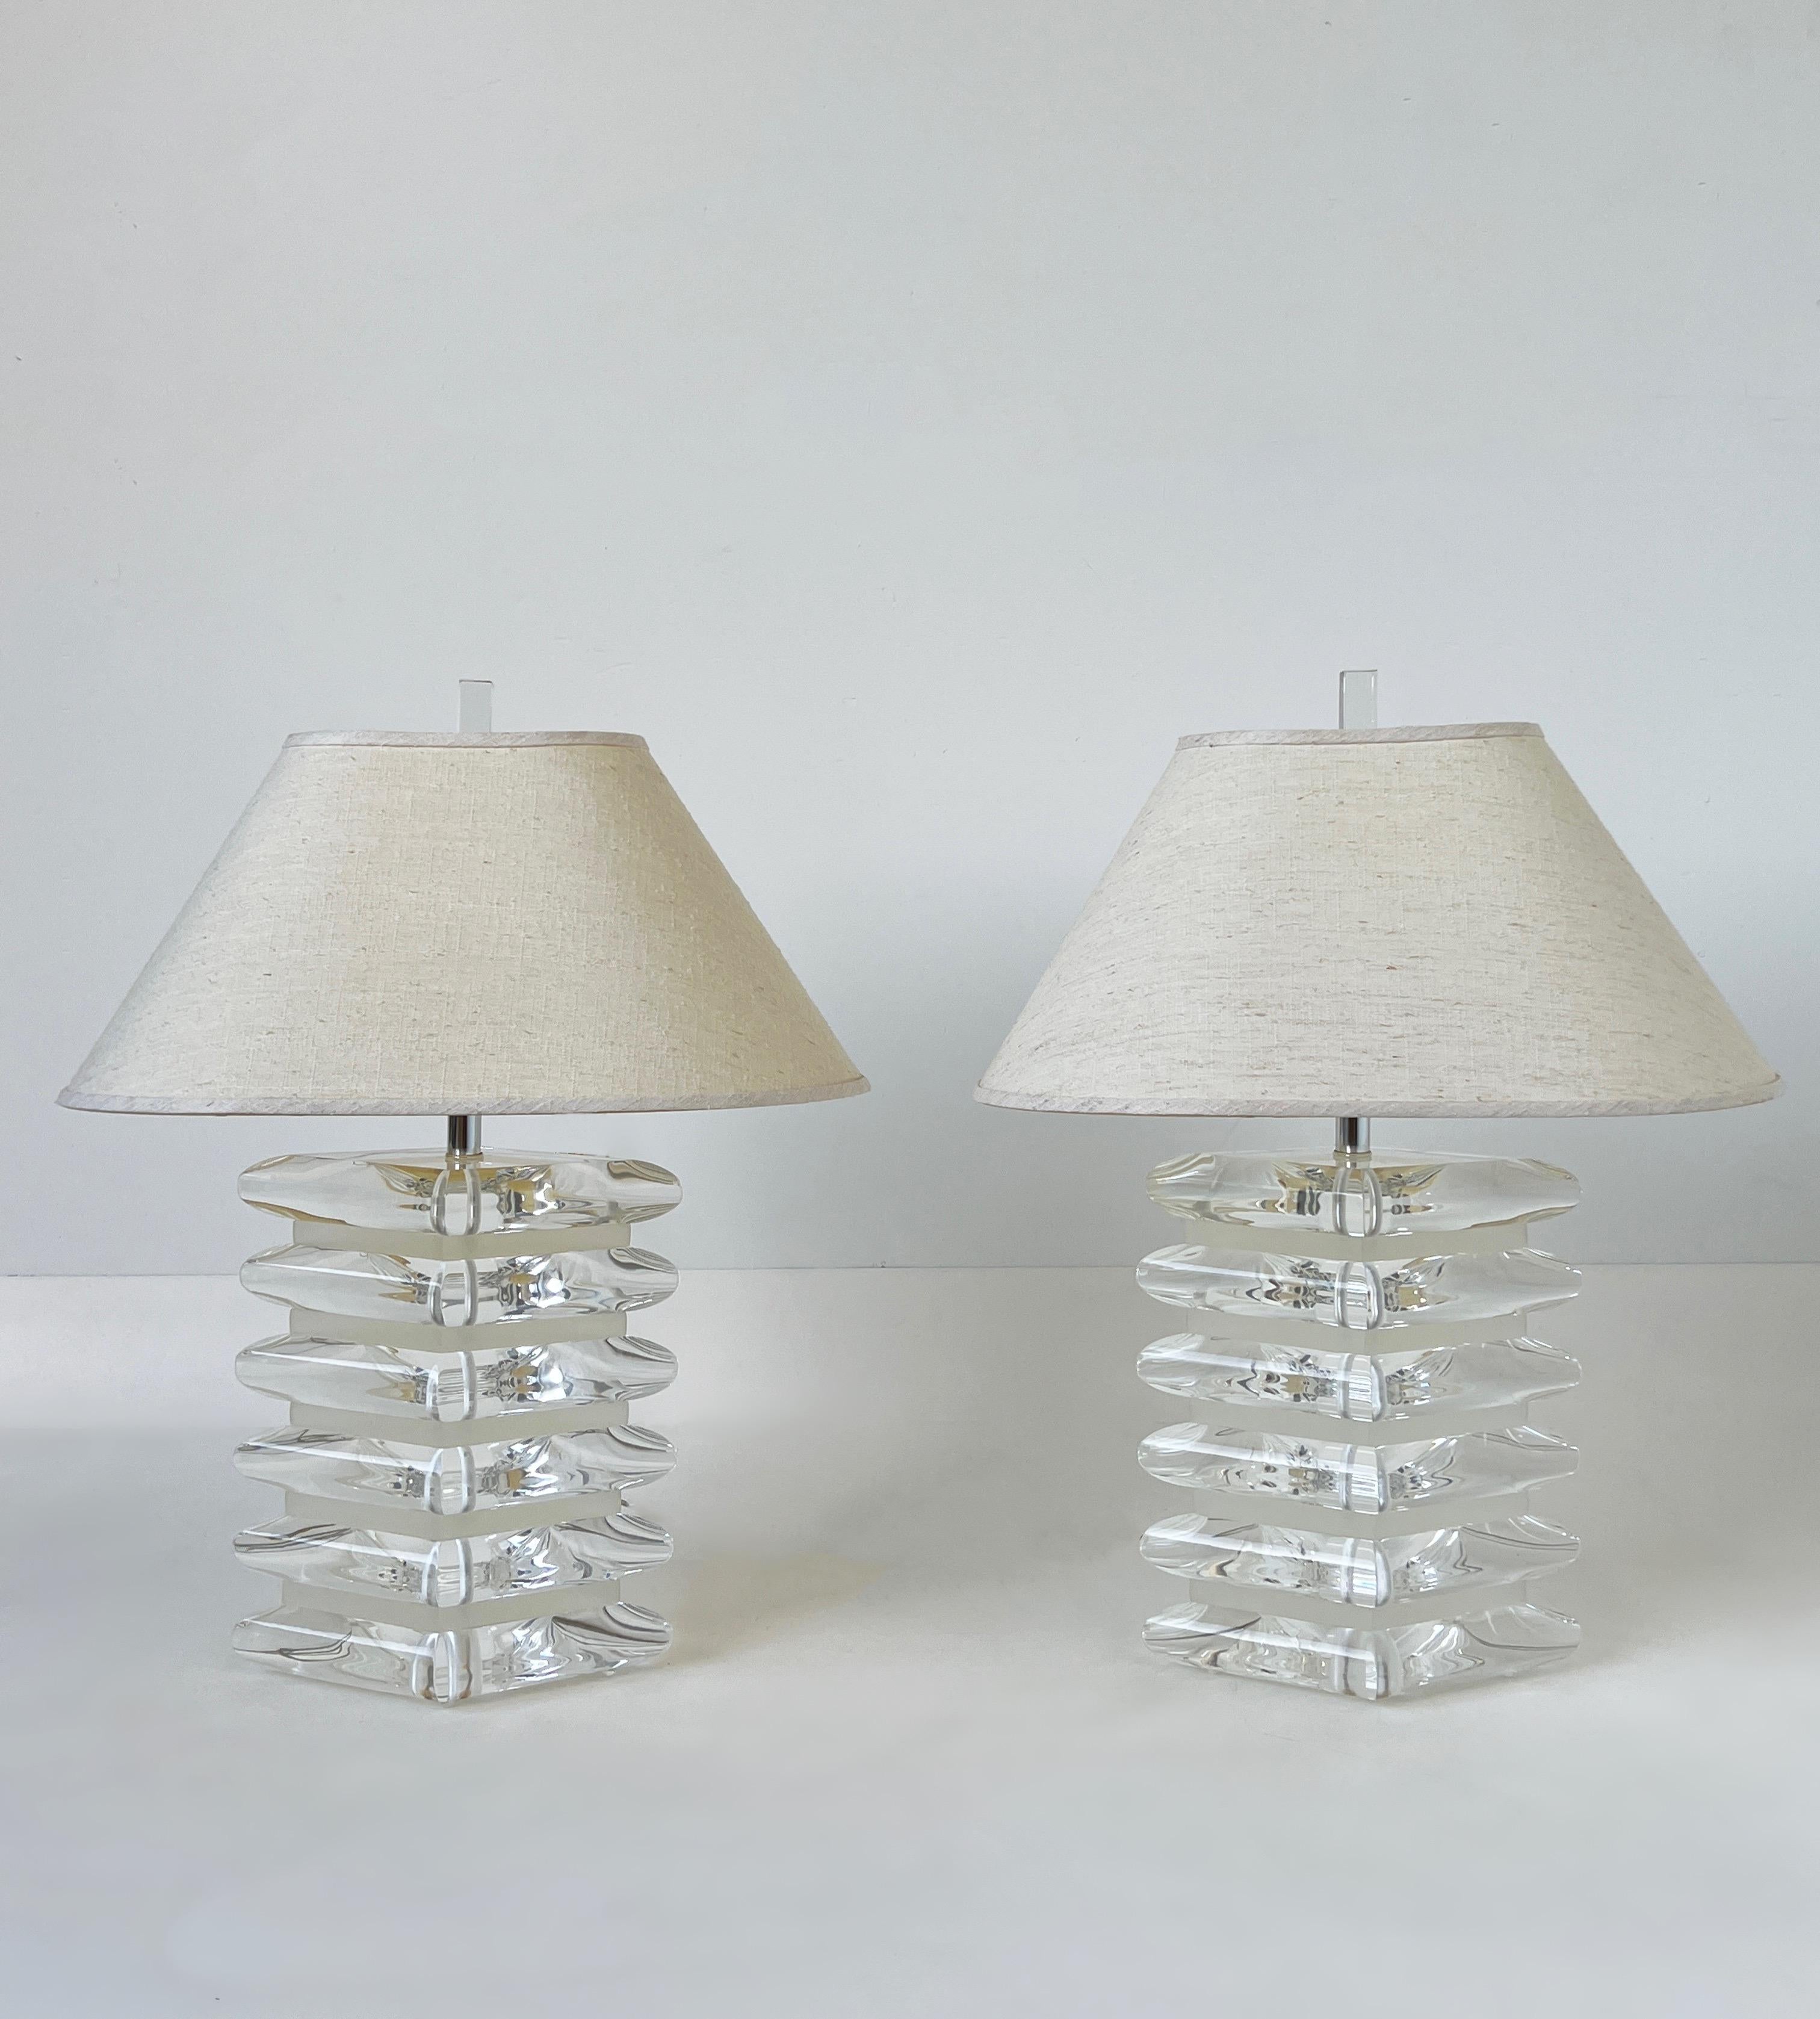 Paar dicke klare und satinierte rautenförmige Tischlampen aus Acryl und Chrom mit Leinenschirmen aus den 1980er Jahren. 
In schönem Vintage-Zustand, neu verkabelt.
Die Schirme sind original und weisen altersgemäße Gebrauchsspuren auf.